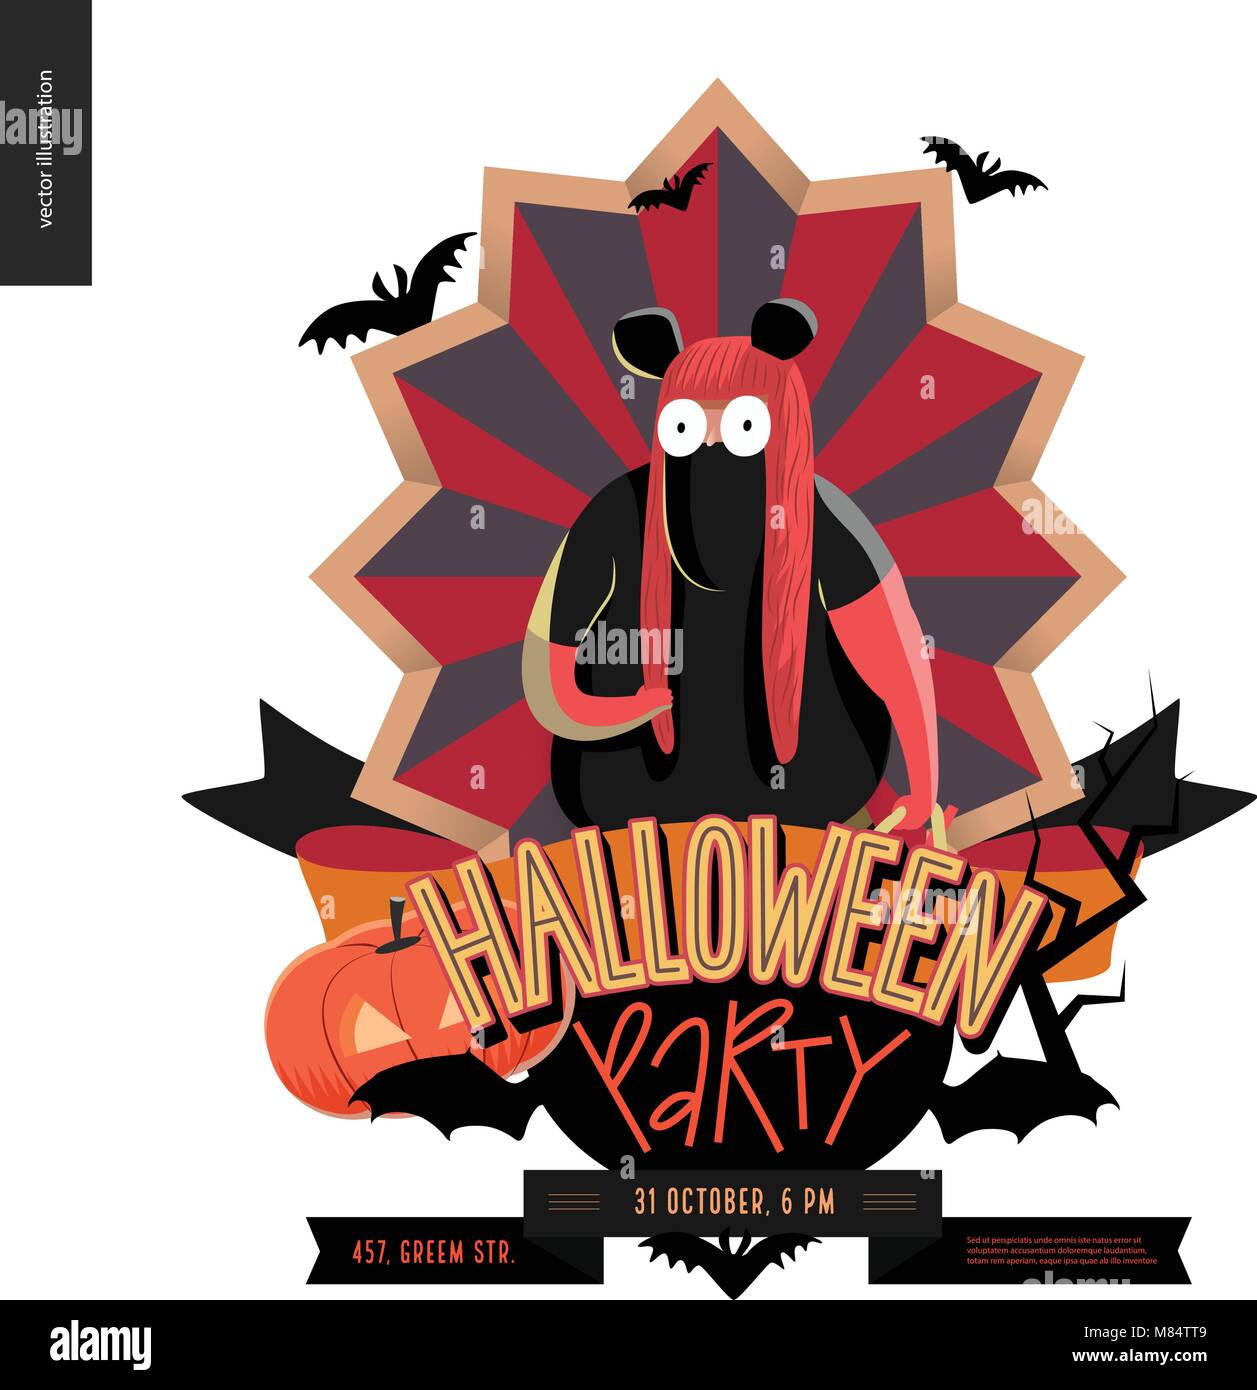 Halloween Party aus Emblem Einladung. Flache vectror Cartoon illustriert Design eines fettes Mädchen mit Minnie Maus Kostüm, auf striped Shield, bat Stock Vektor